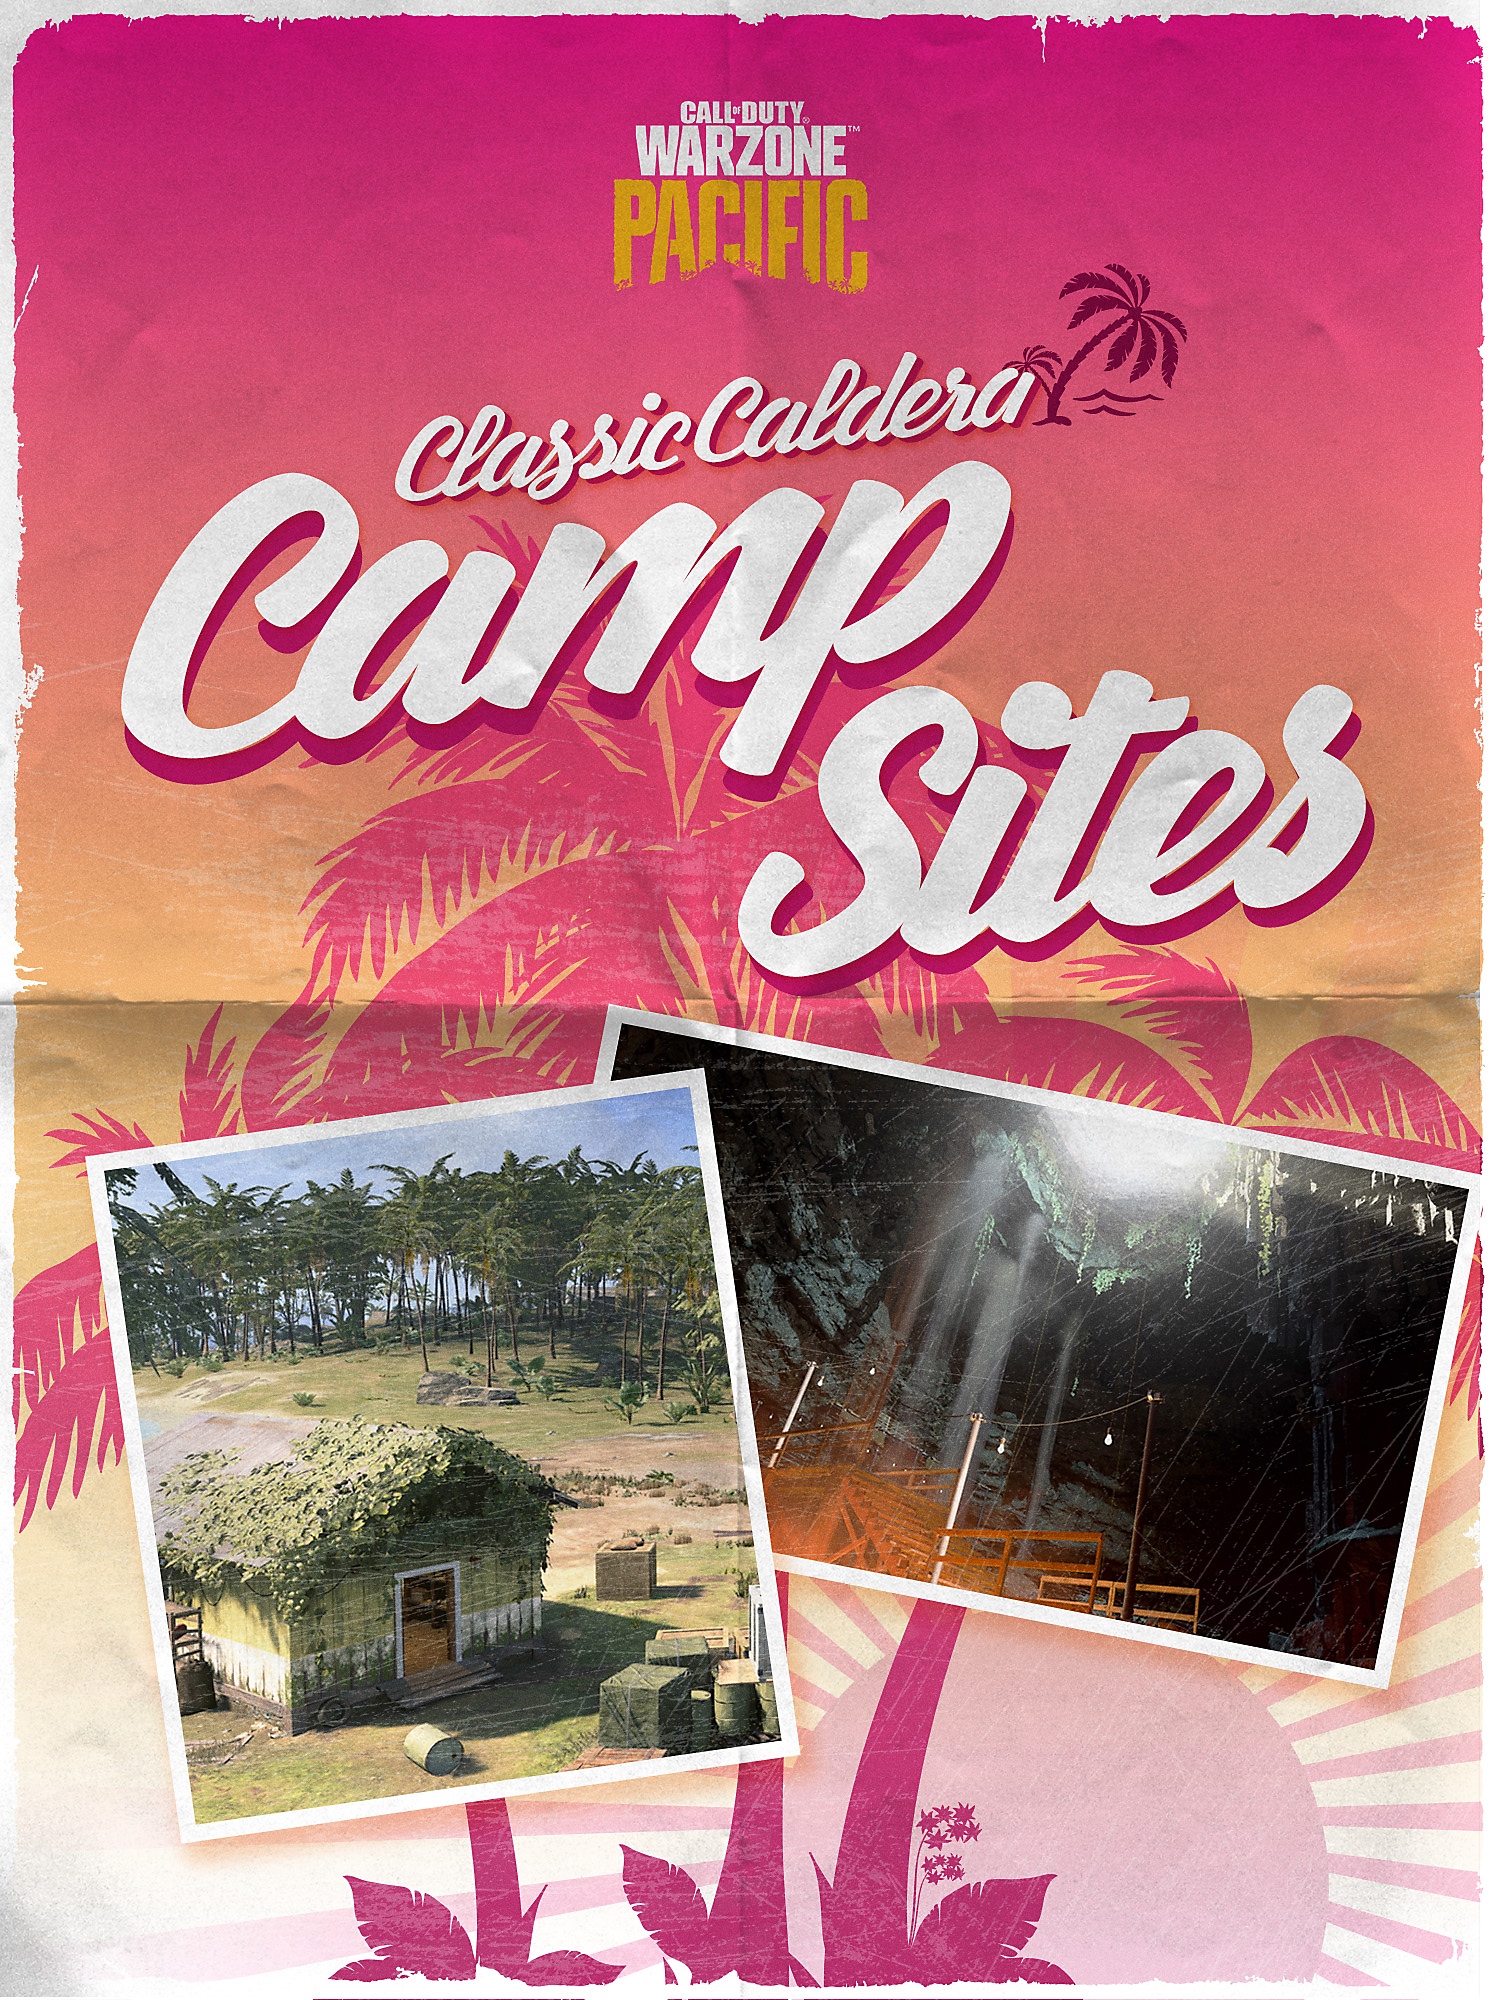 Klasszikus táborhelyek Calderán prospektus borítója